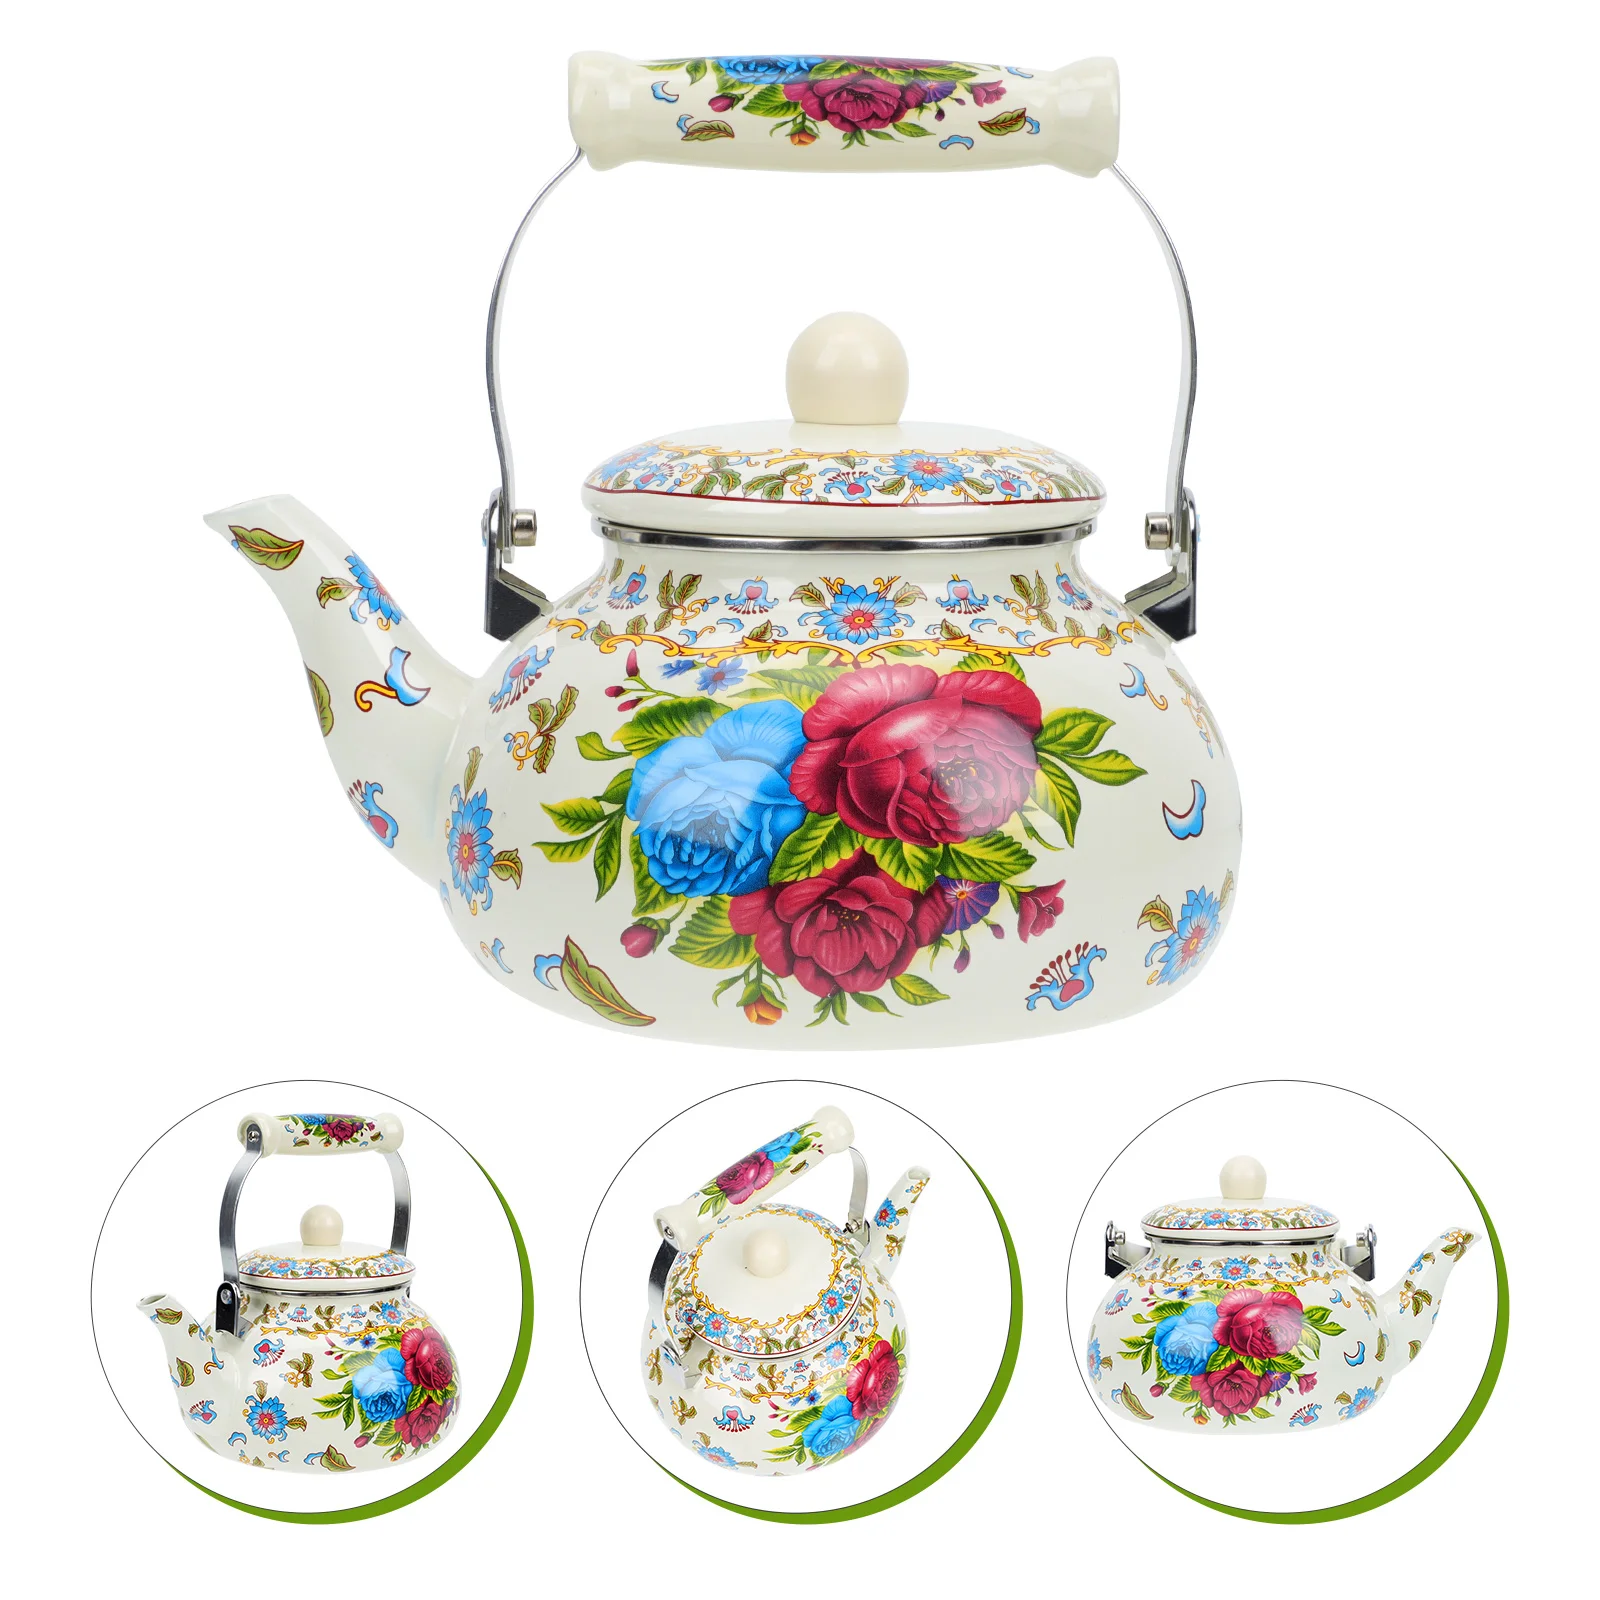 

Эмалированный чайник, прочный чайник для кипячения воды, практичный чайник для чая, чайник для чая